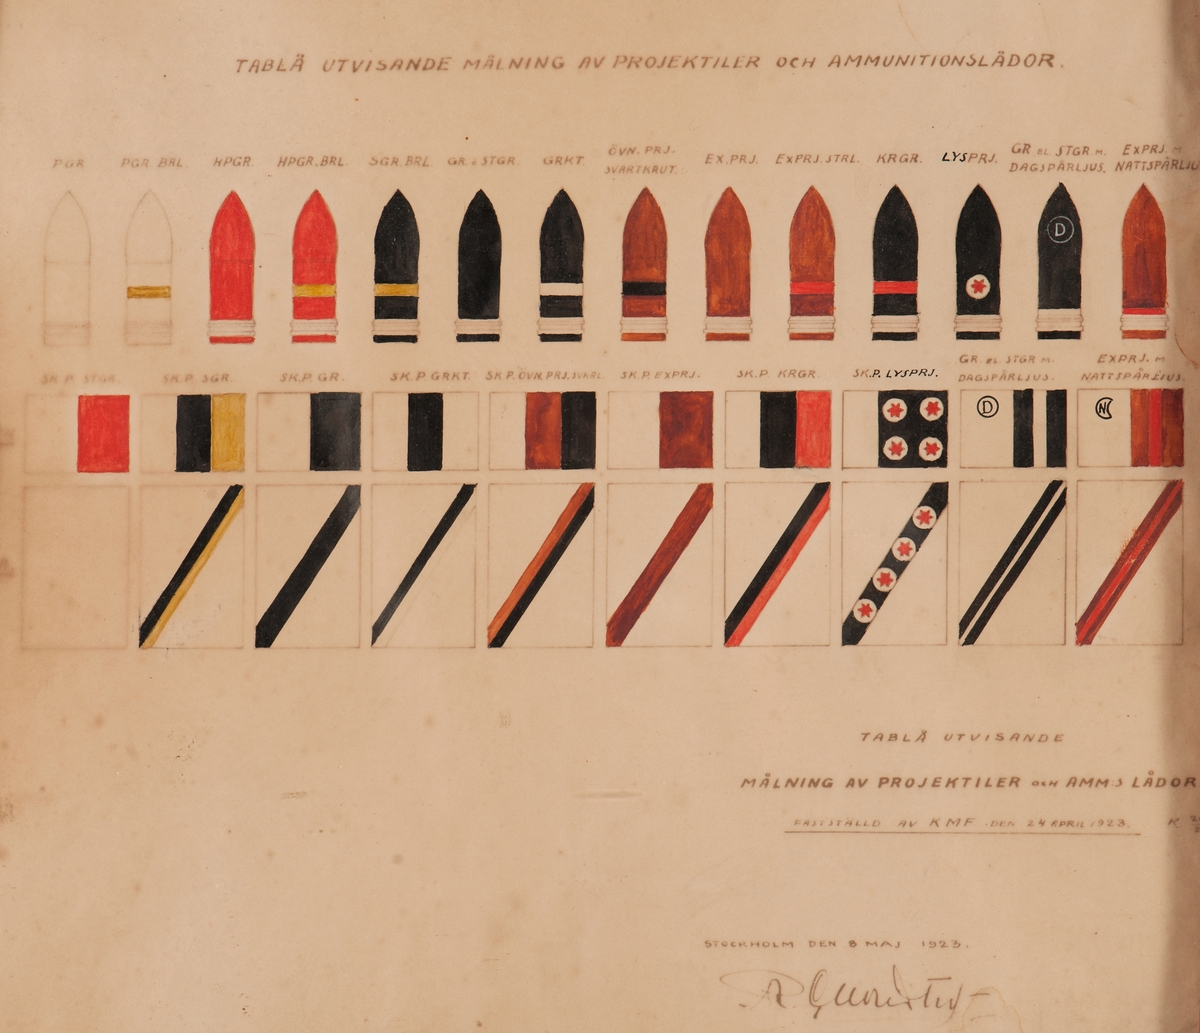 Färglagda skisser av projektiler. Fastställd av KMF d. 24 april 1923
K 206/23, Stockholm d. 8 maj 1923.